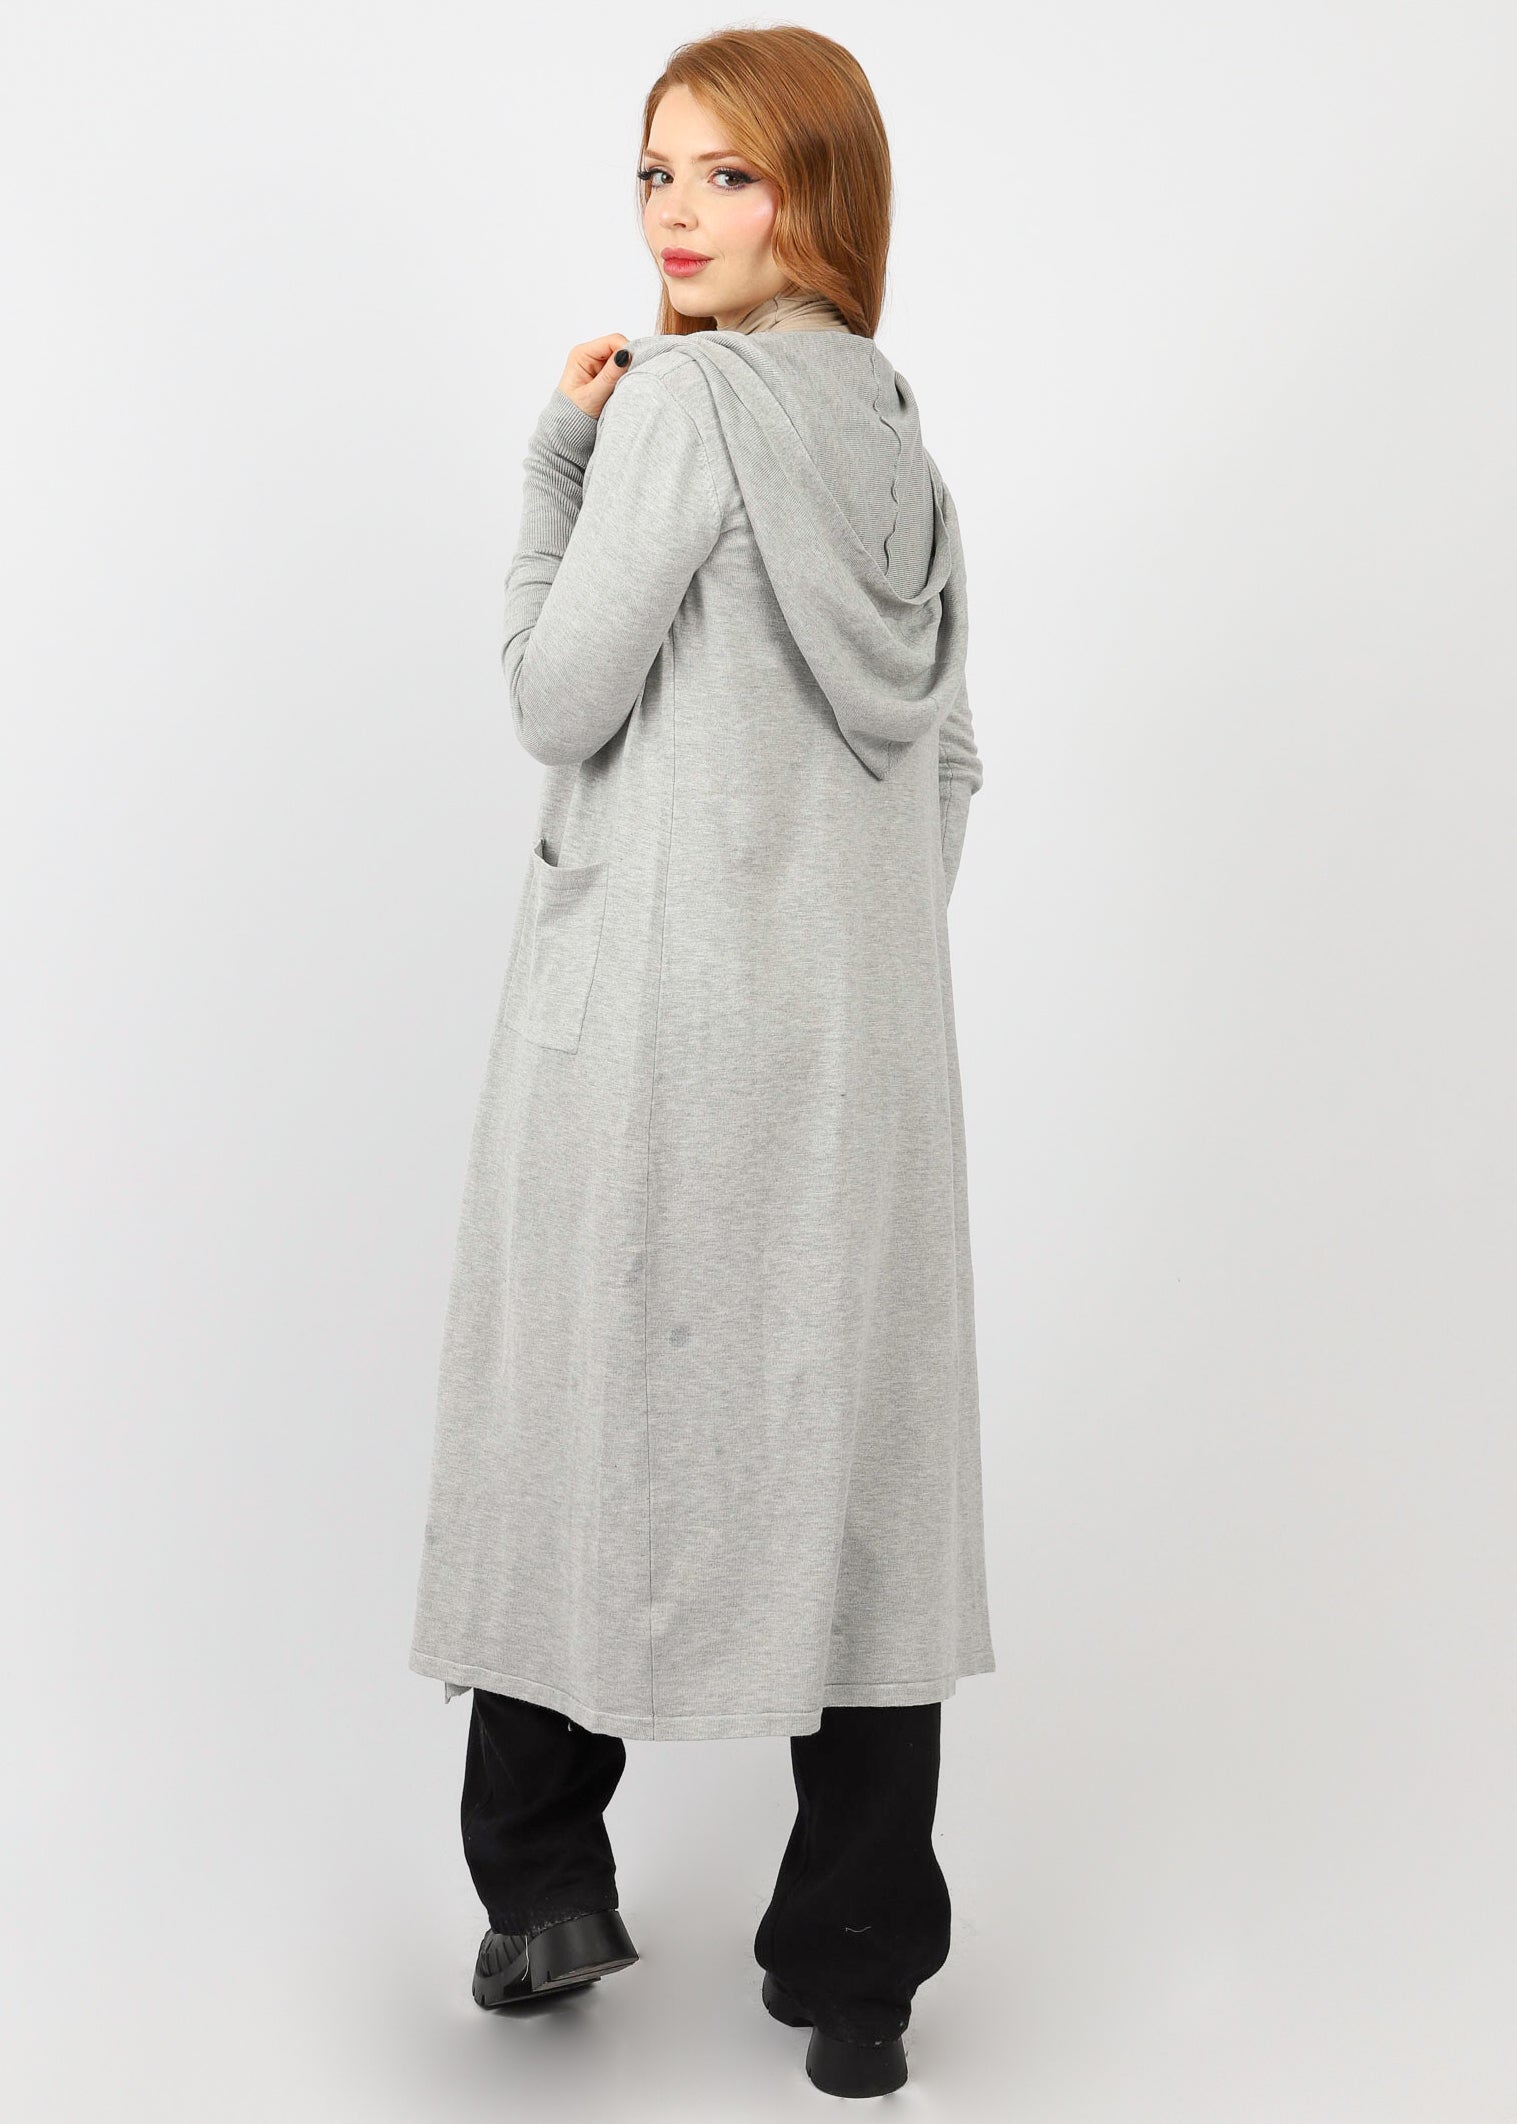 7905-Grey-cardigan-knit